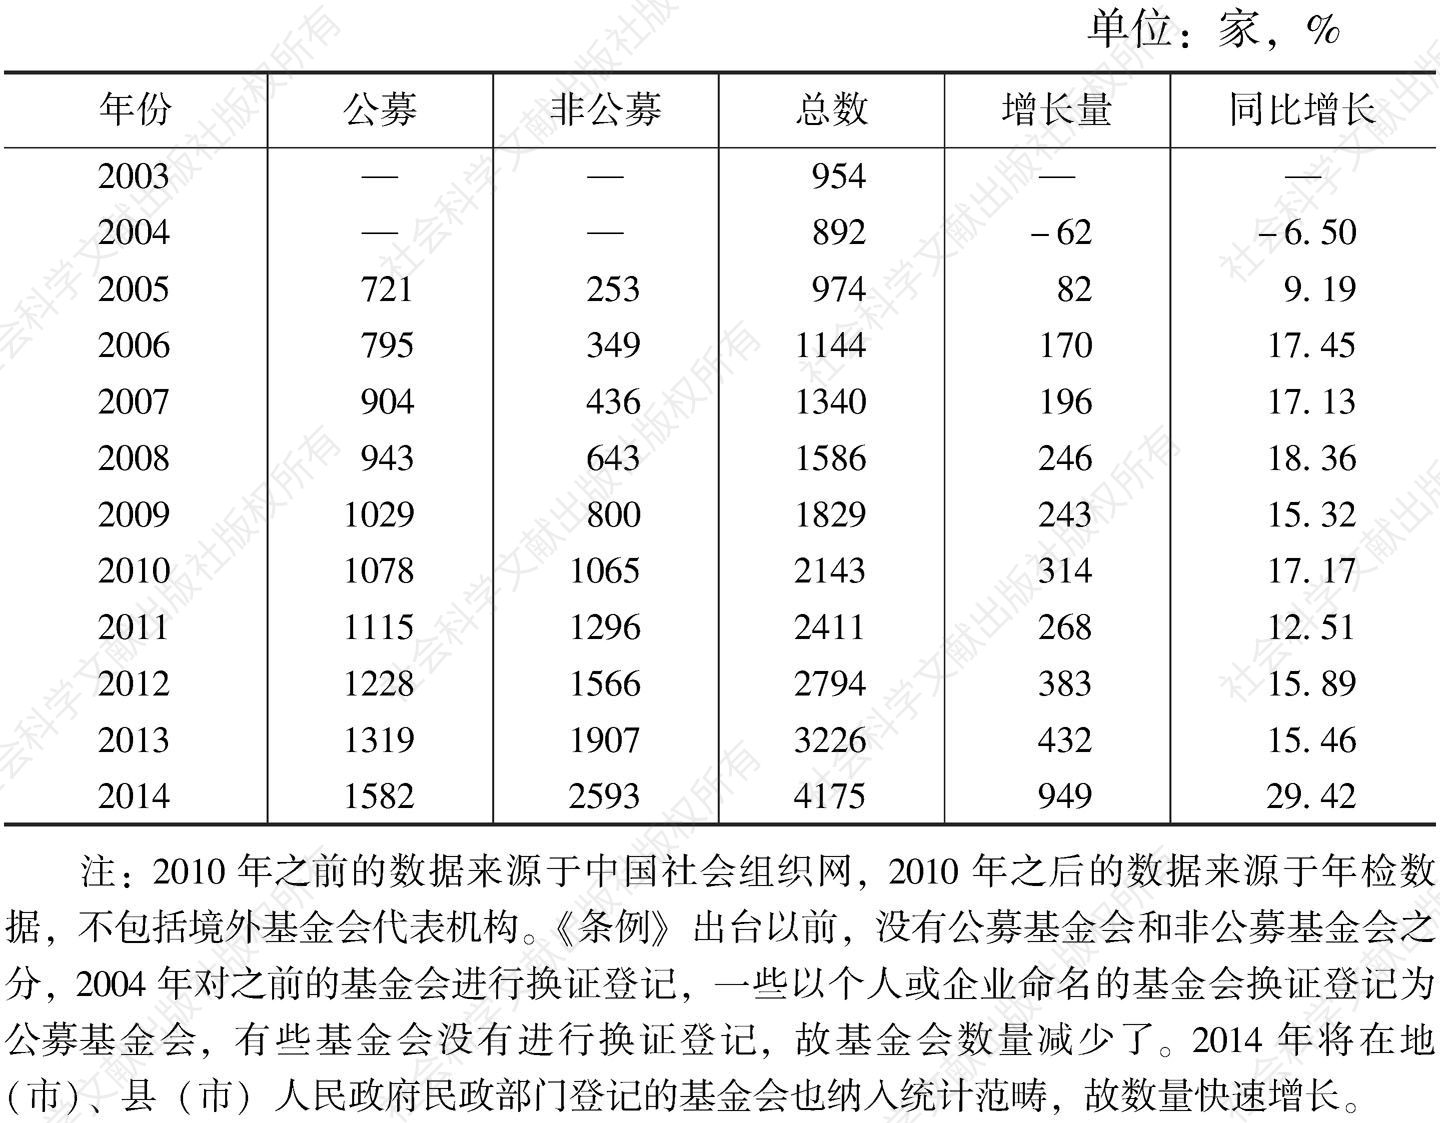 表1 中国基金会数量增长状况